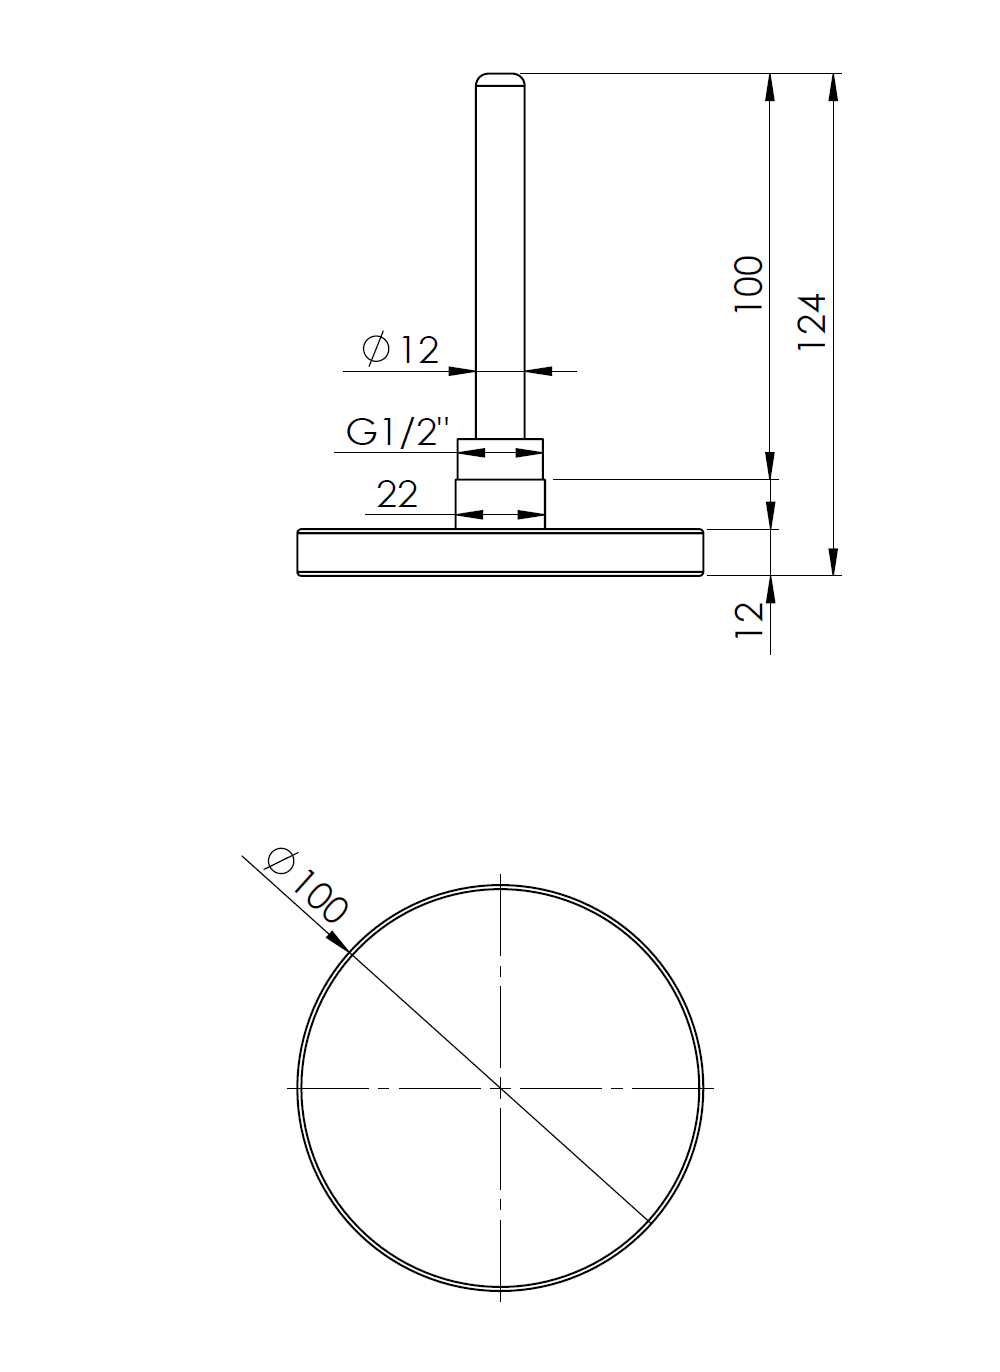 63961 Termometr bimetaliczny BiTh 100, fi100 mm, -20÷60°C, L 100 mm, G1/2", ax, kl. 2 - wymiary AFRISO 1